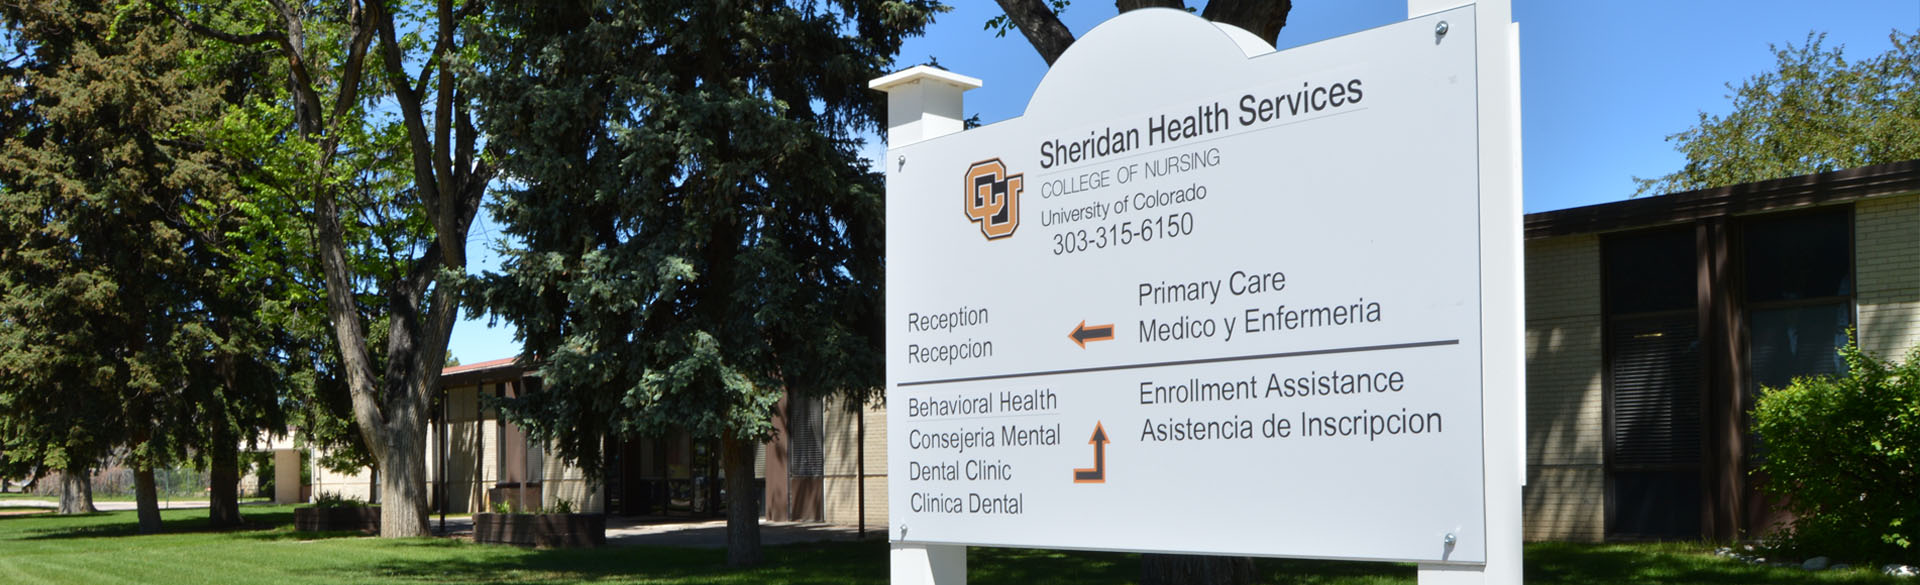 Sheridan Health Services, Sheridan Colorado